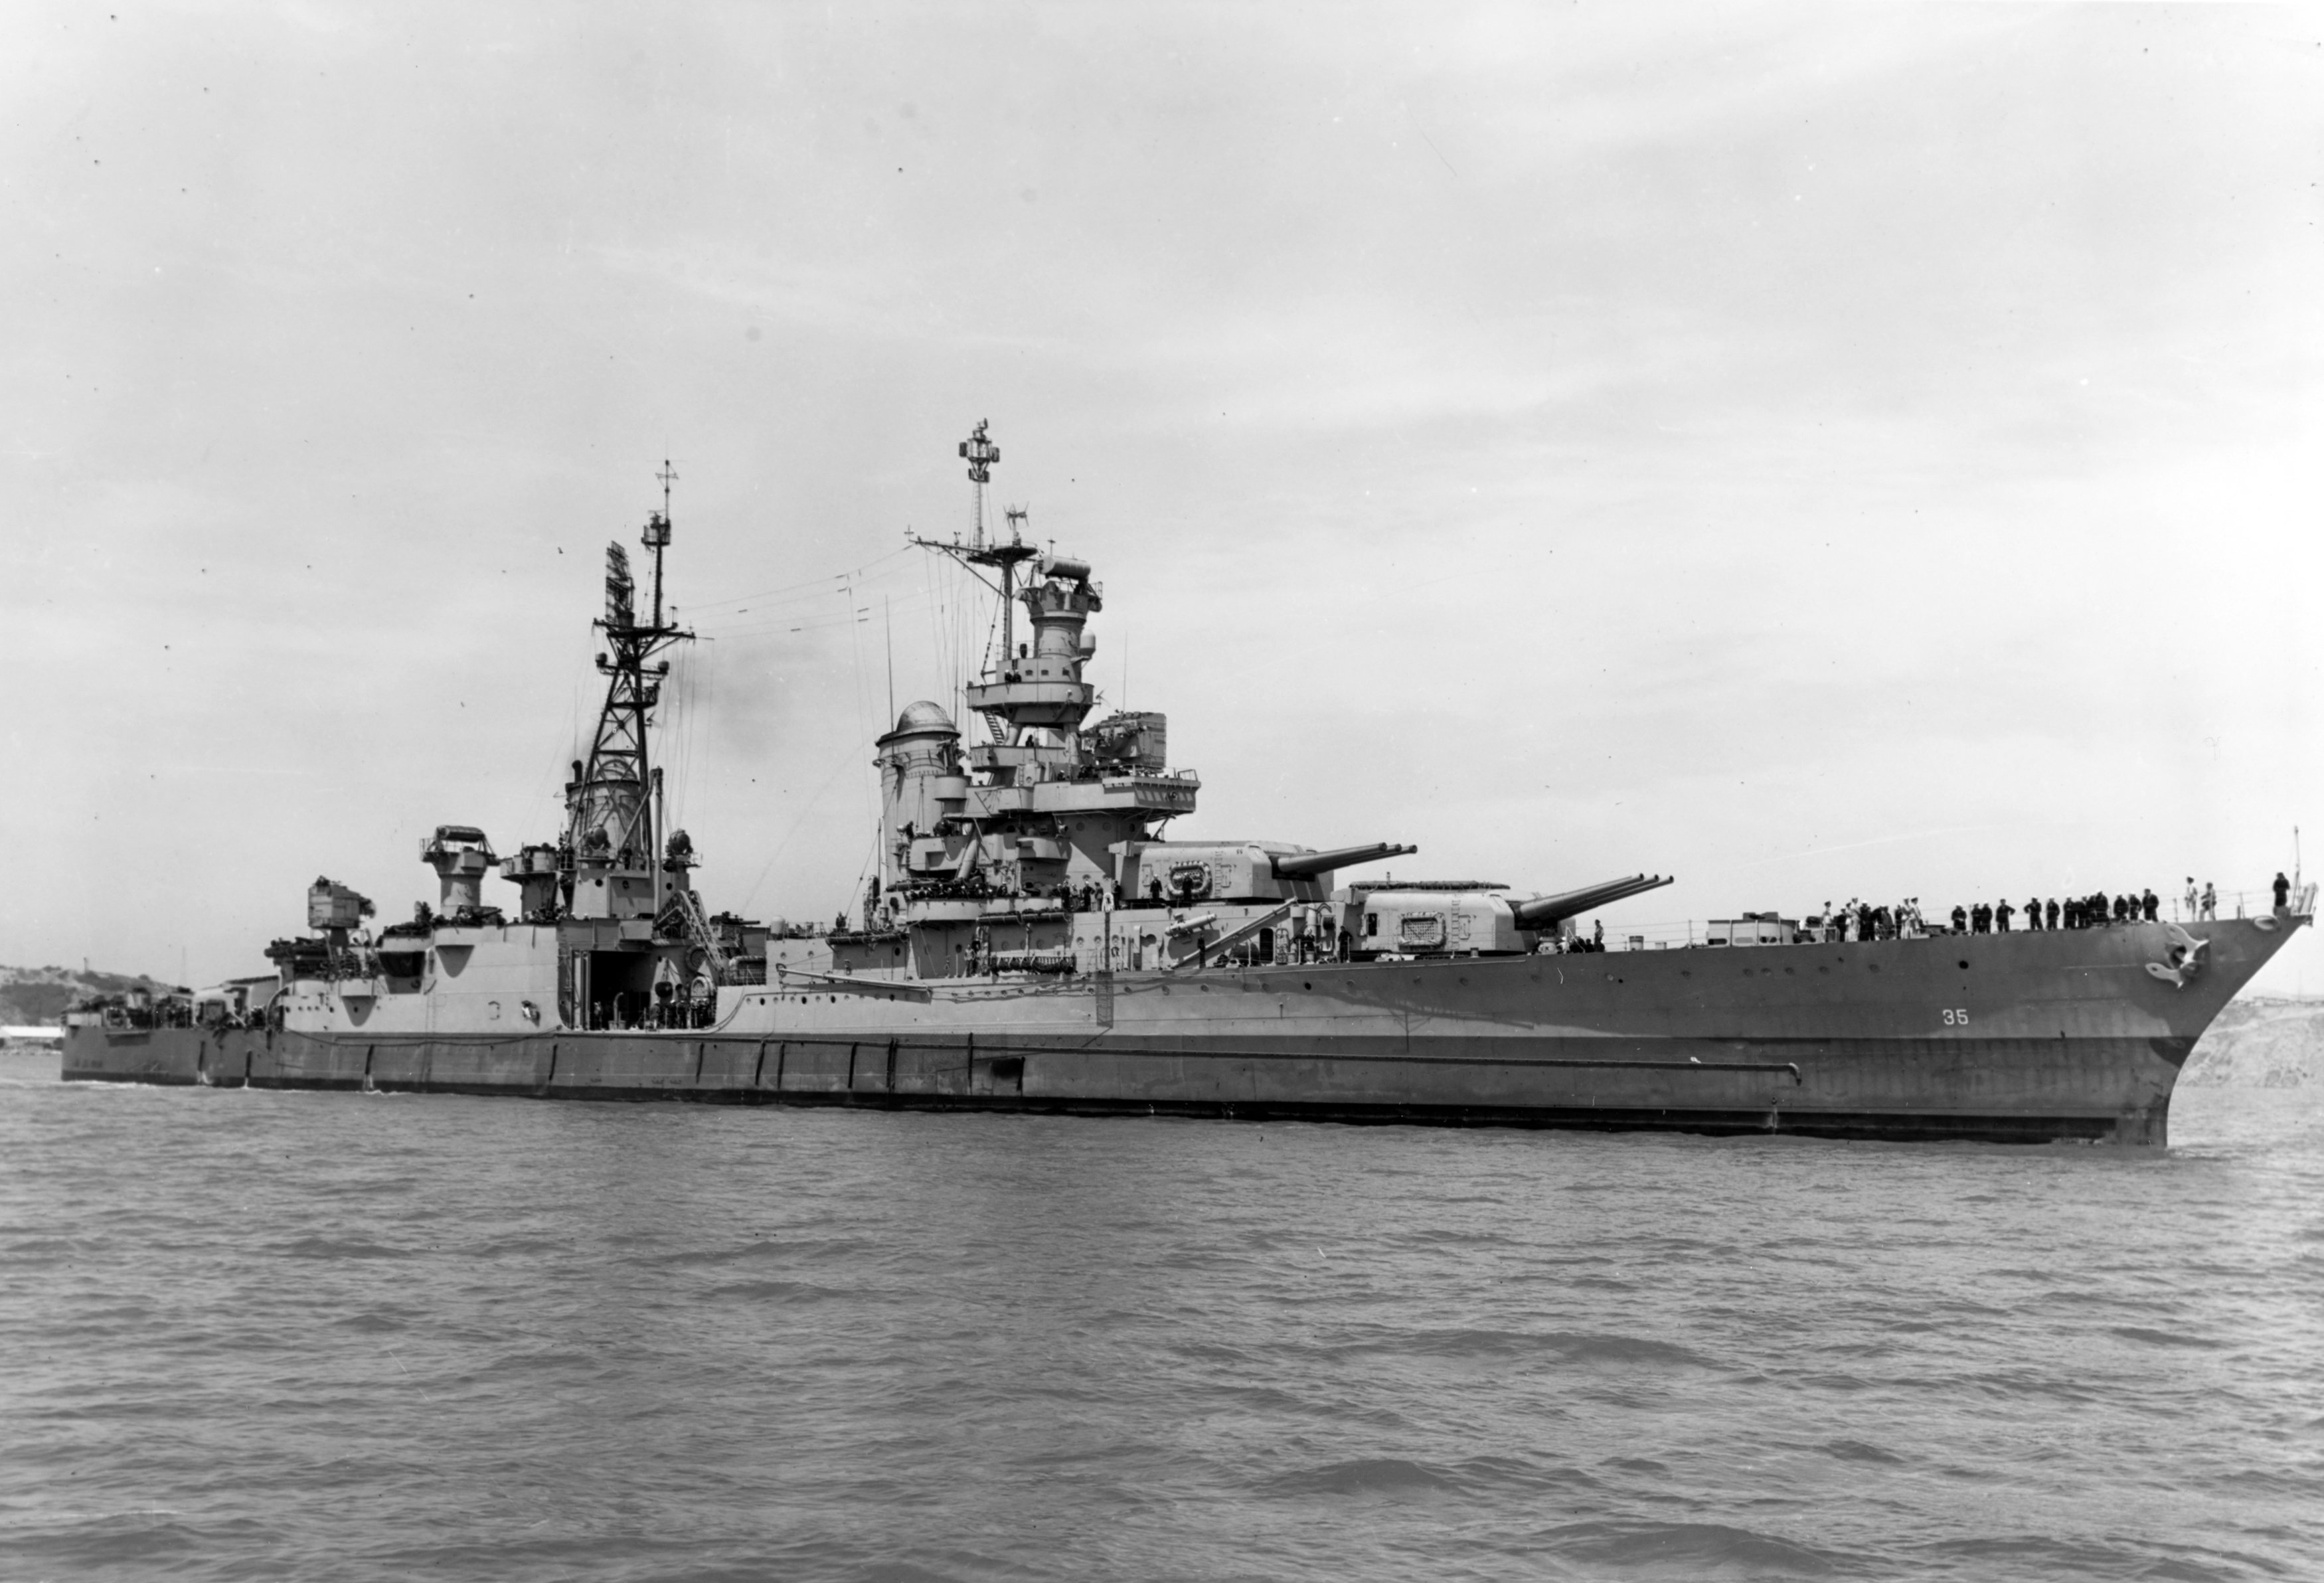 السفينة الحربية الأمريكية إنديانابوليس  ابان الحرب العالمية الثانية قبل قصفها